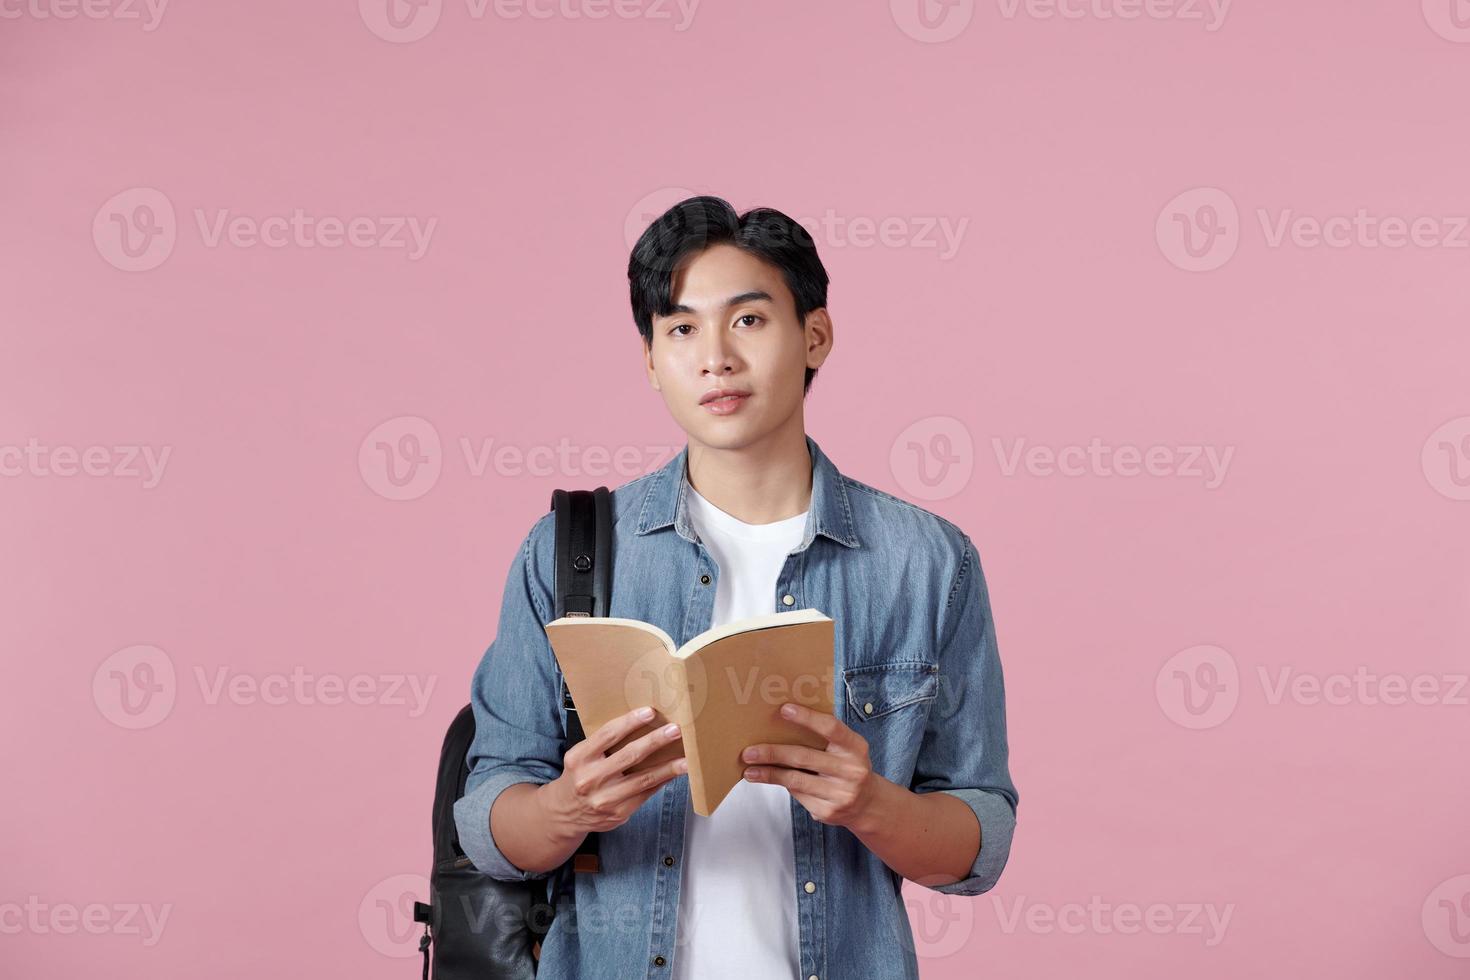 Ein junger Student, der einen Rucksack trägt und eine offene Buchlesung hält, isoliert auf einem rosa Hintergrund. foto